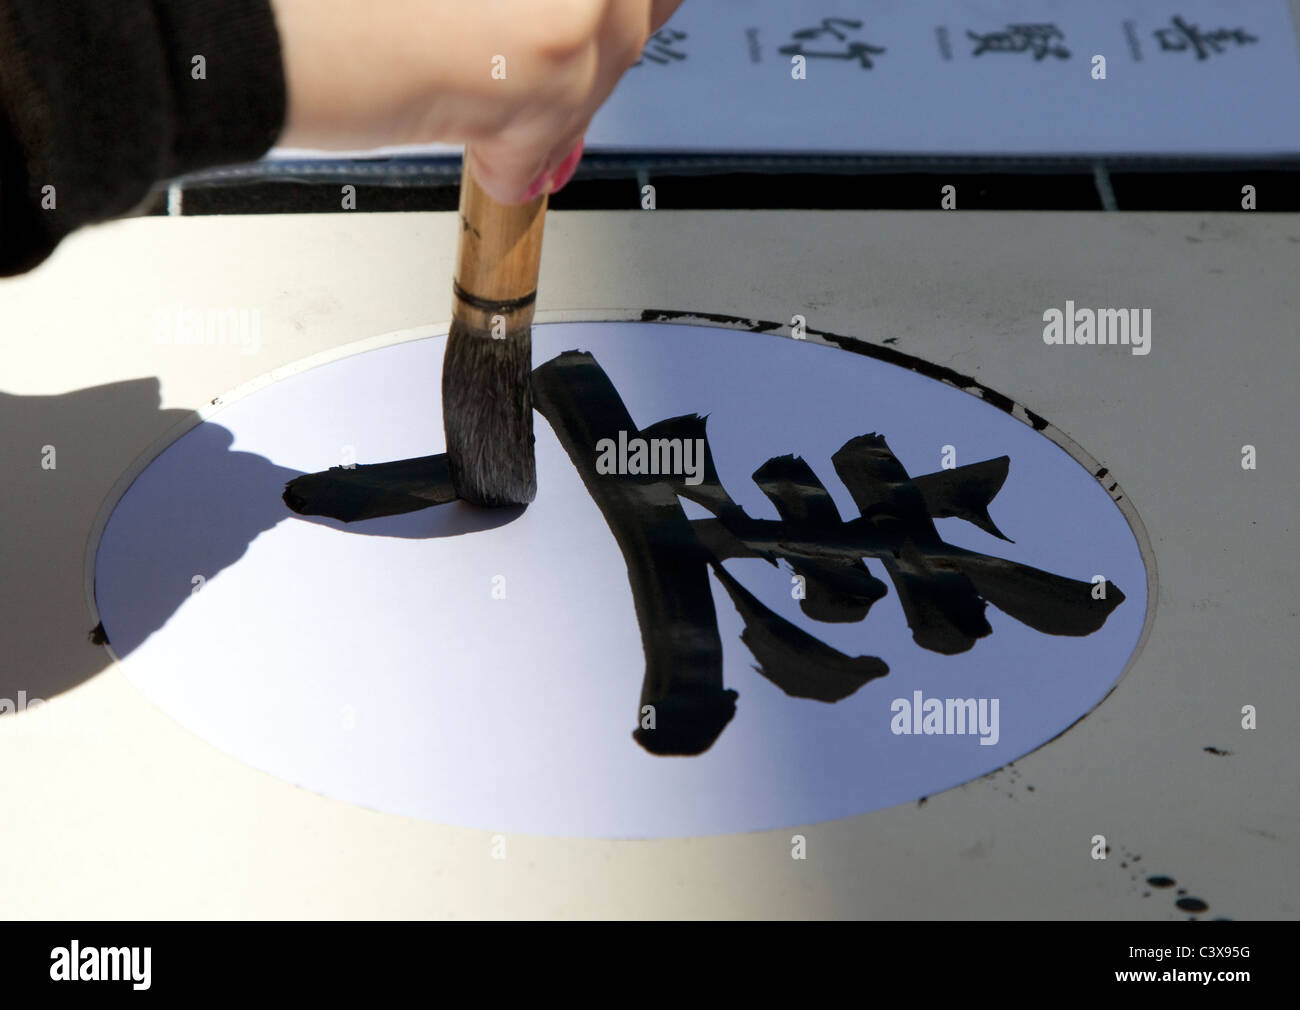 Chinesische Kalligraphie, London. Ideogramm bedeutet "Güte". Stockfoto